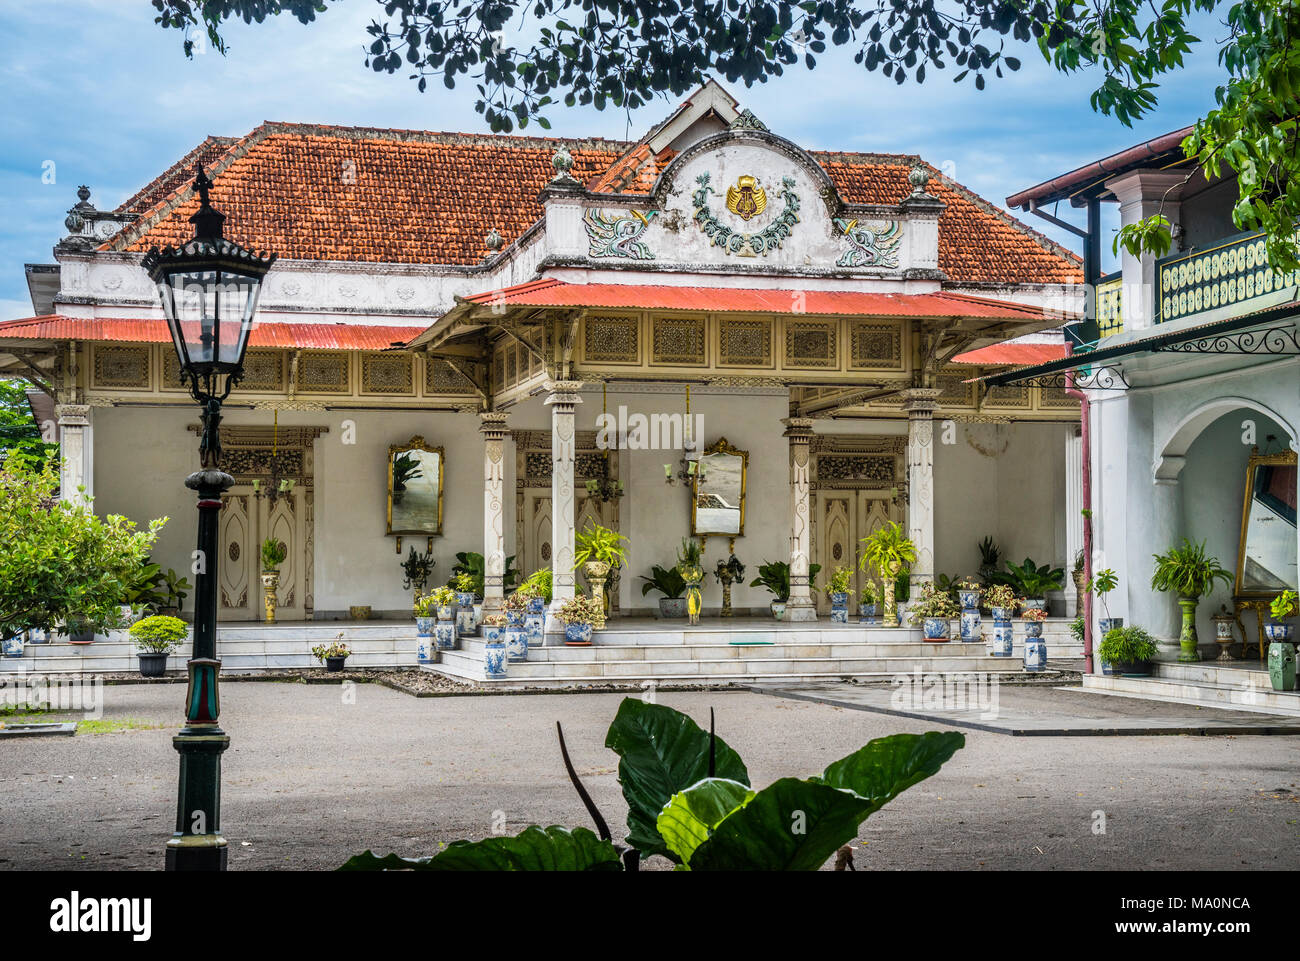 Prominente edificio sontuoso di architettura giavanese, influenzato da stile coloniale olandese, Gedong Jene, noto anche come il palazzo giallo presso il Kraton Foto Stock